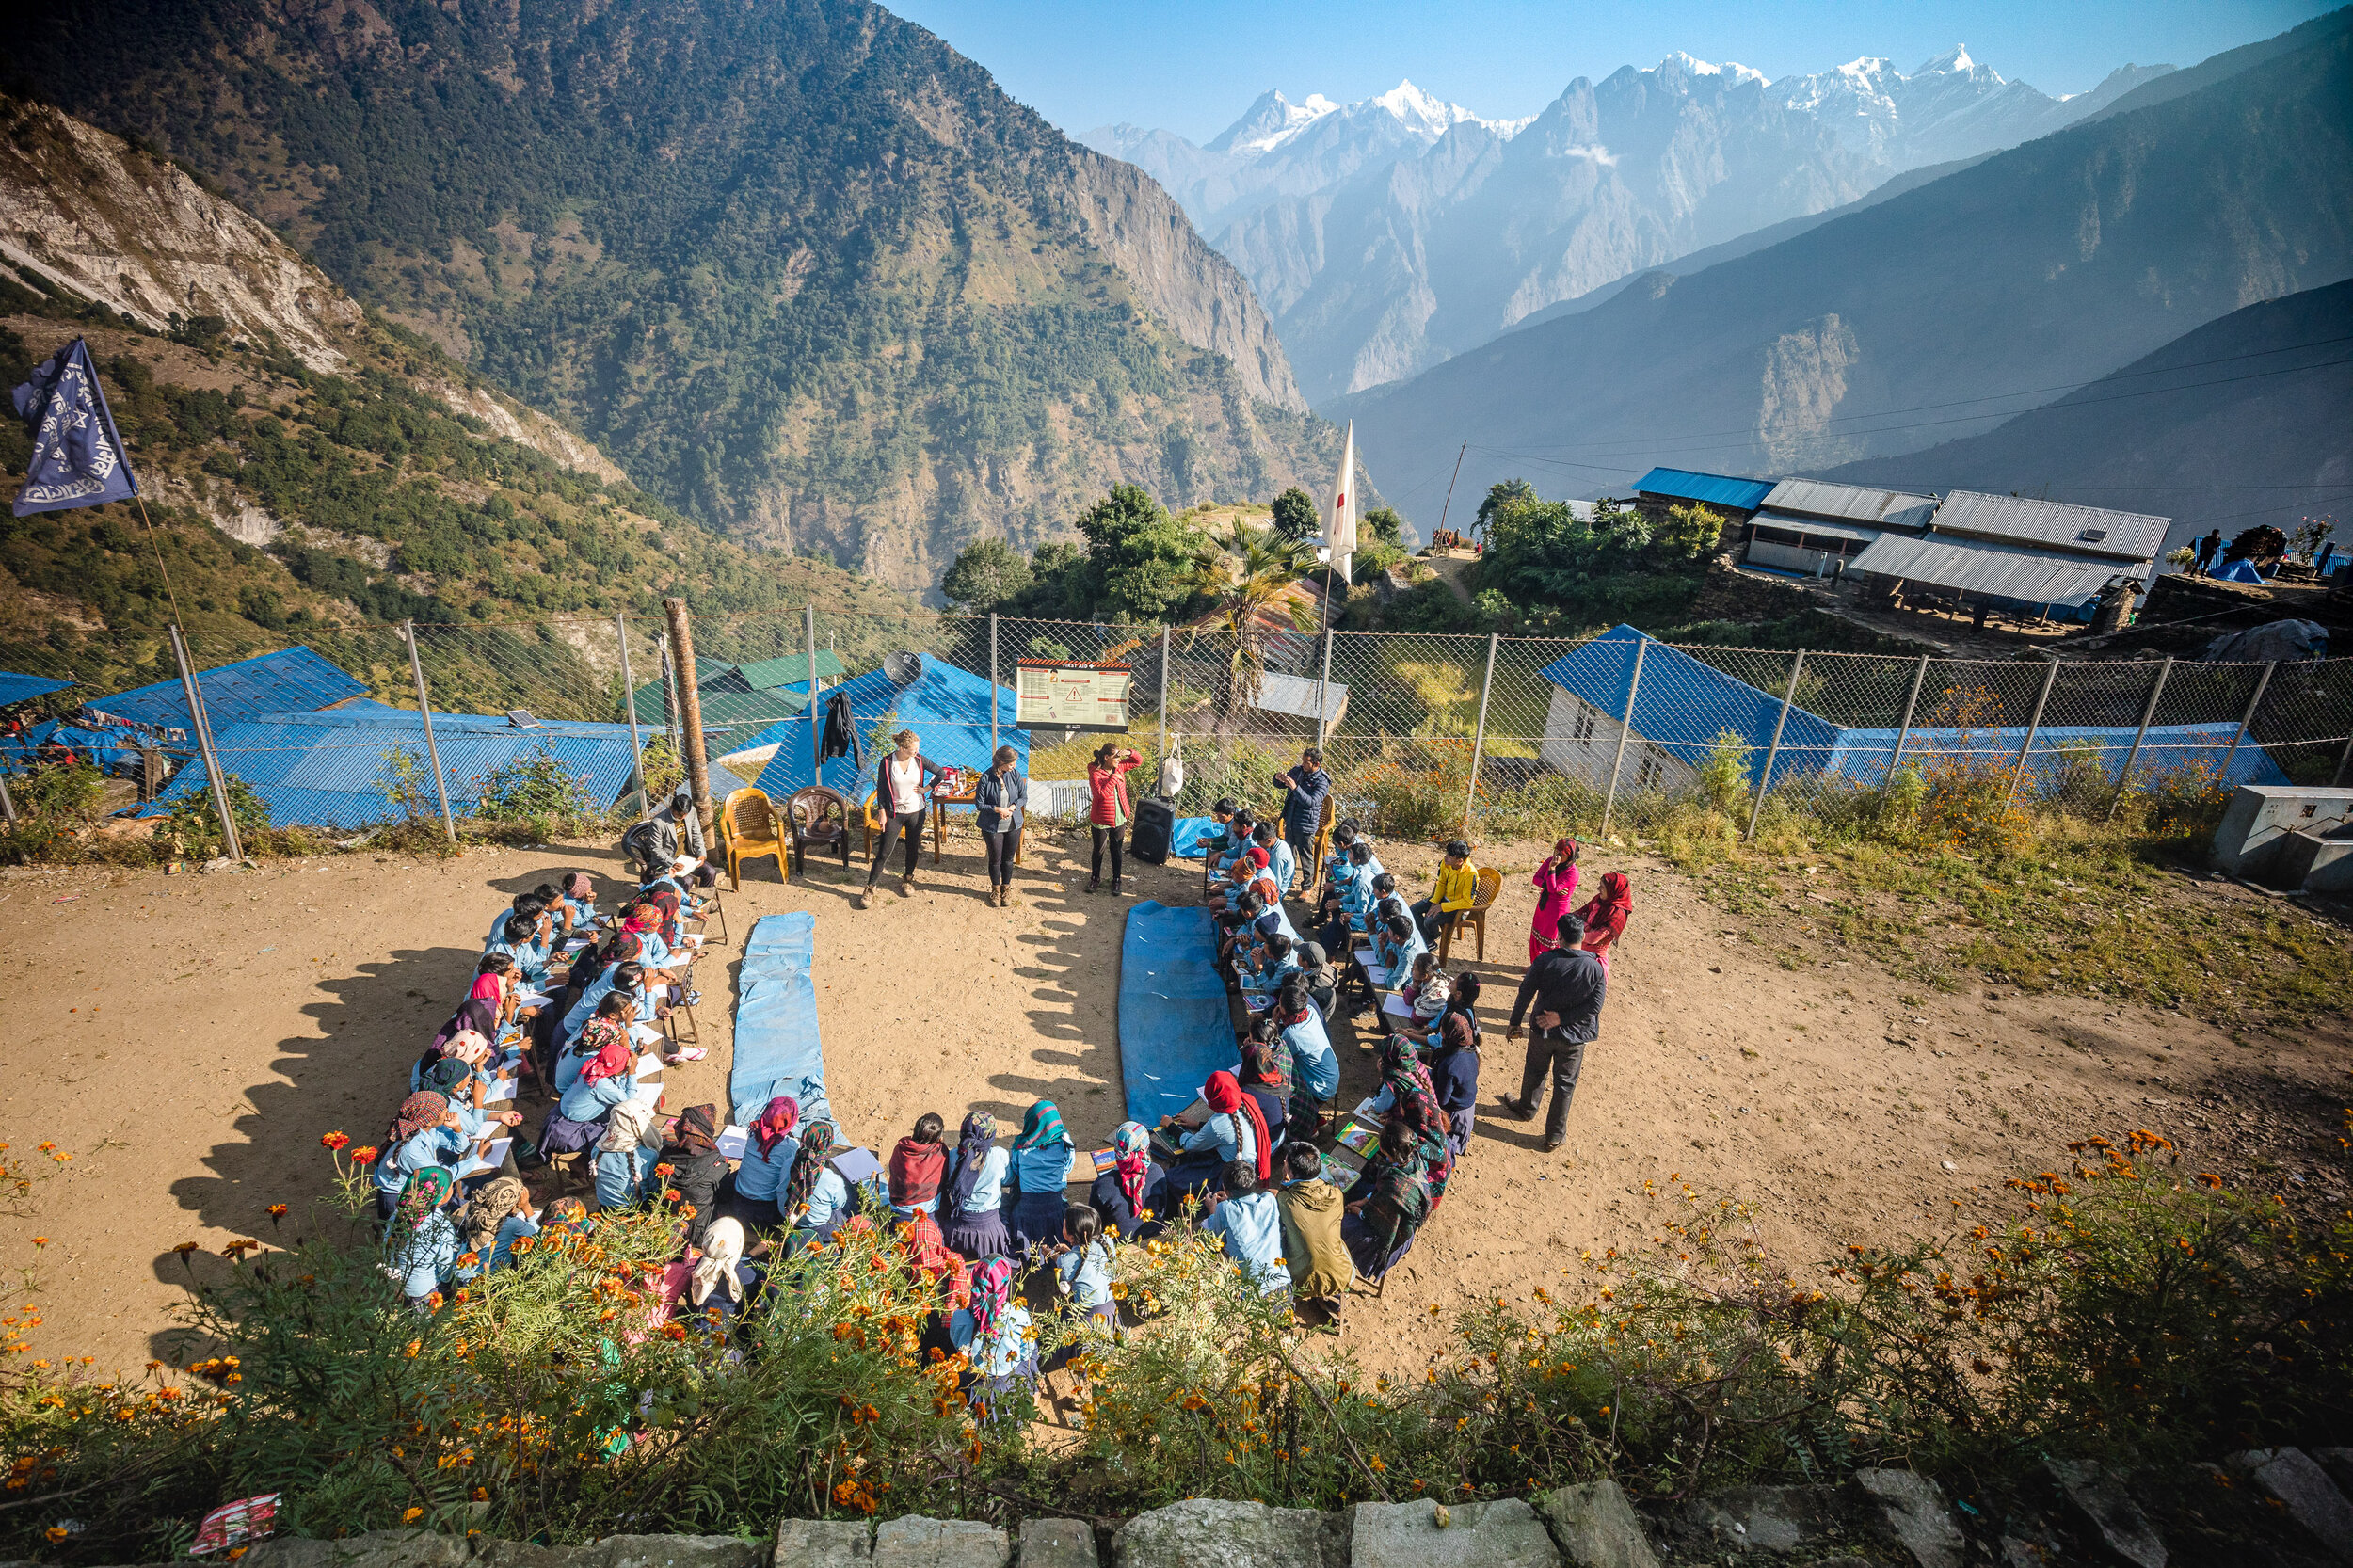   Ga mee als vrijwilliger en geef les op scholen   Kom naar Nepal en help   Lees hier meer  